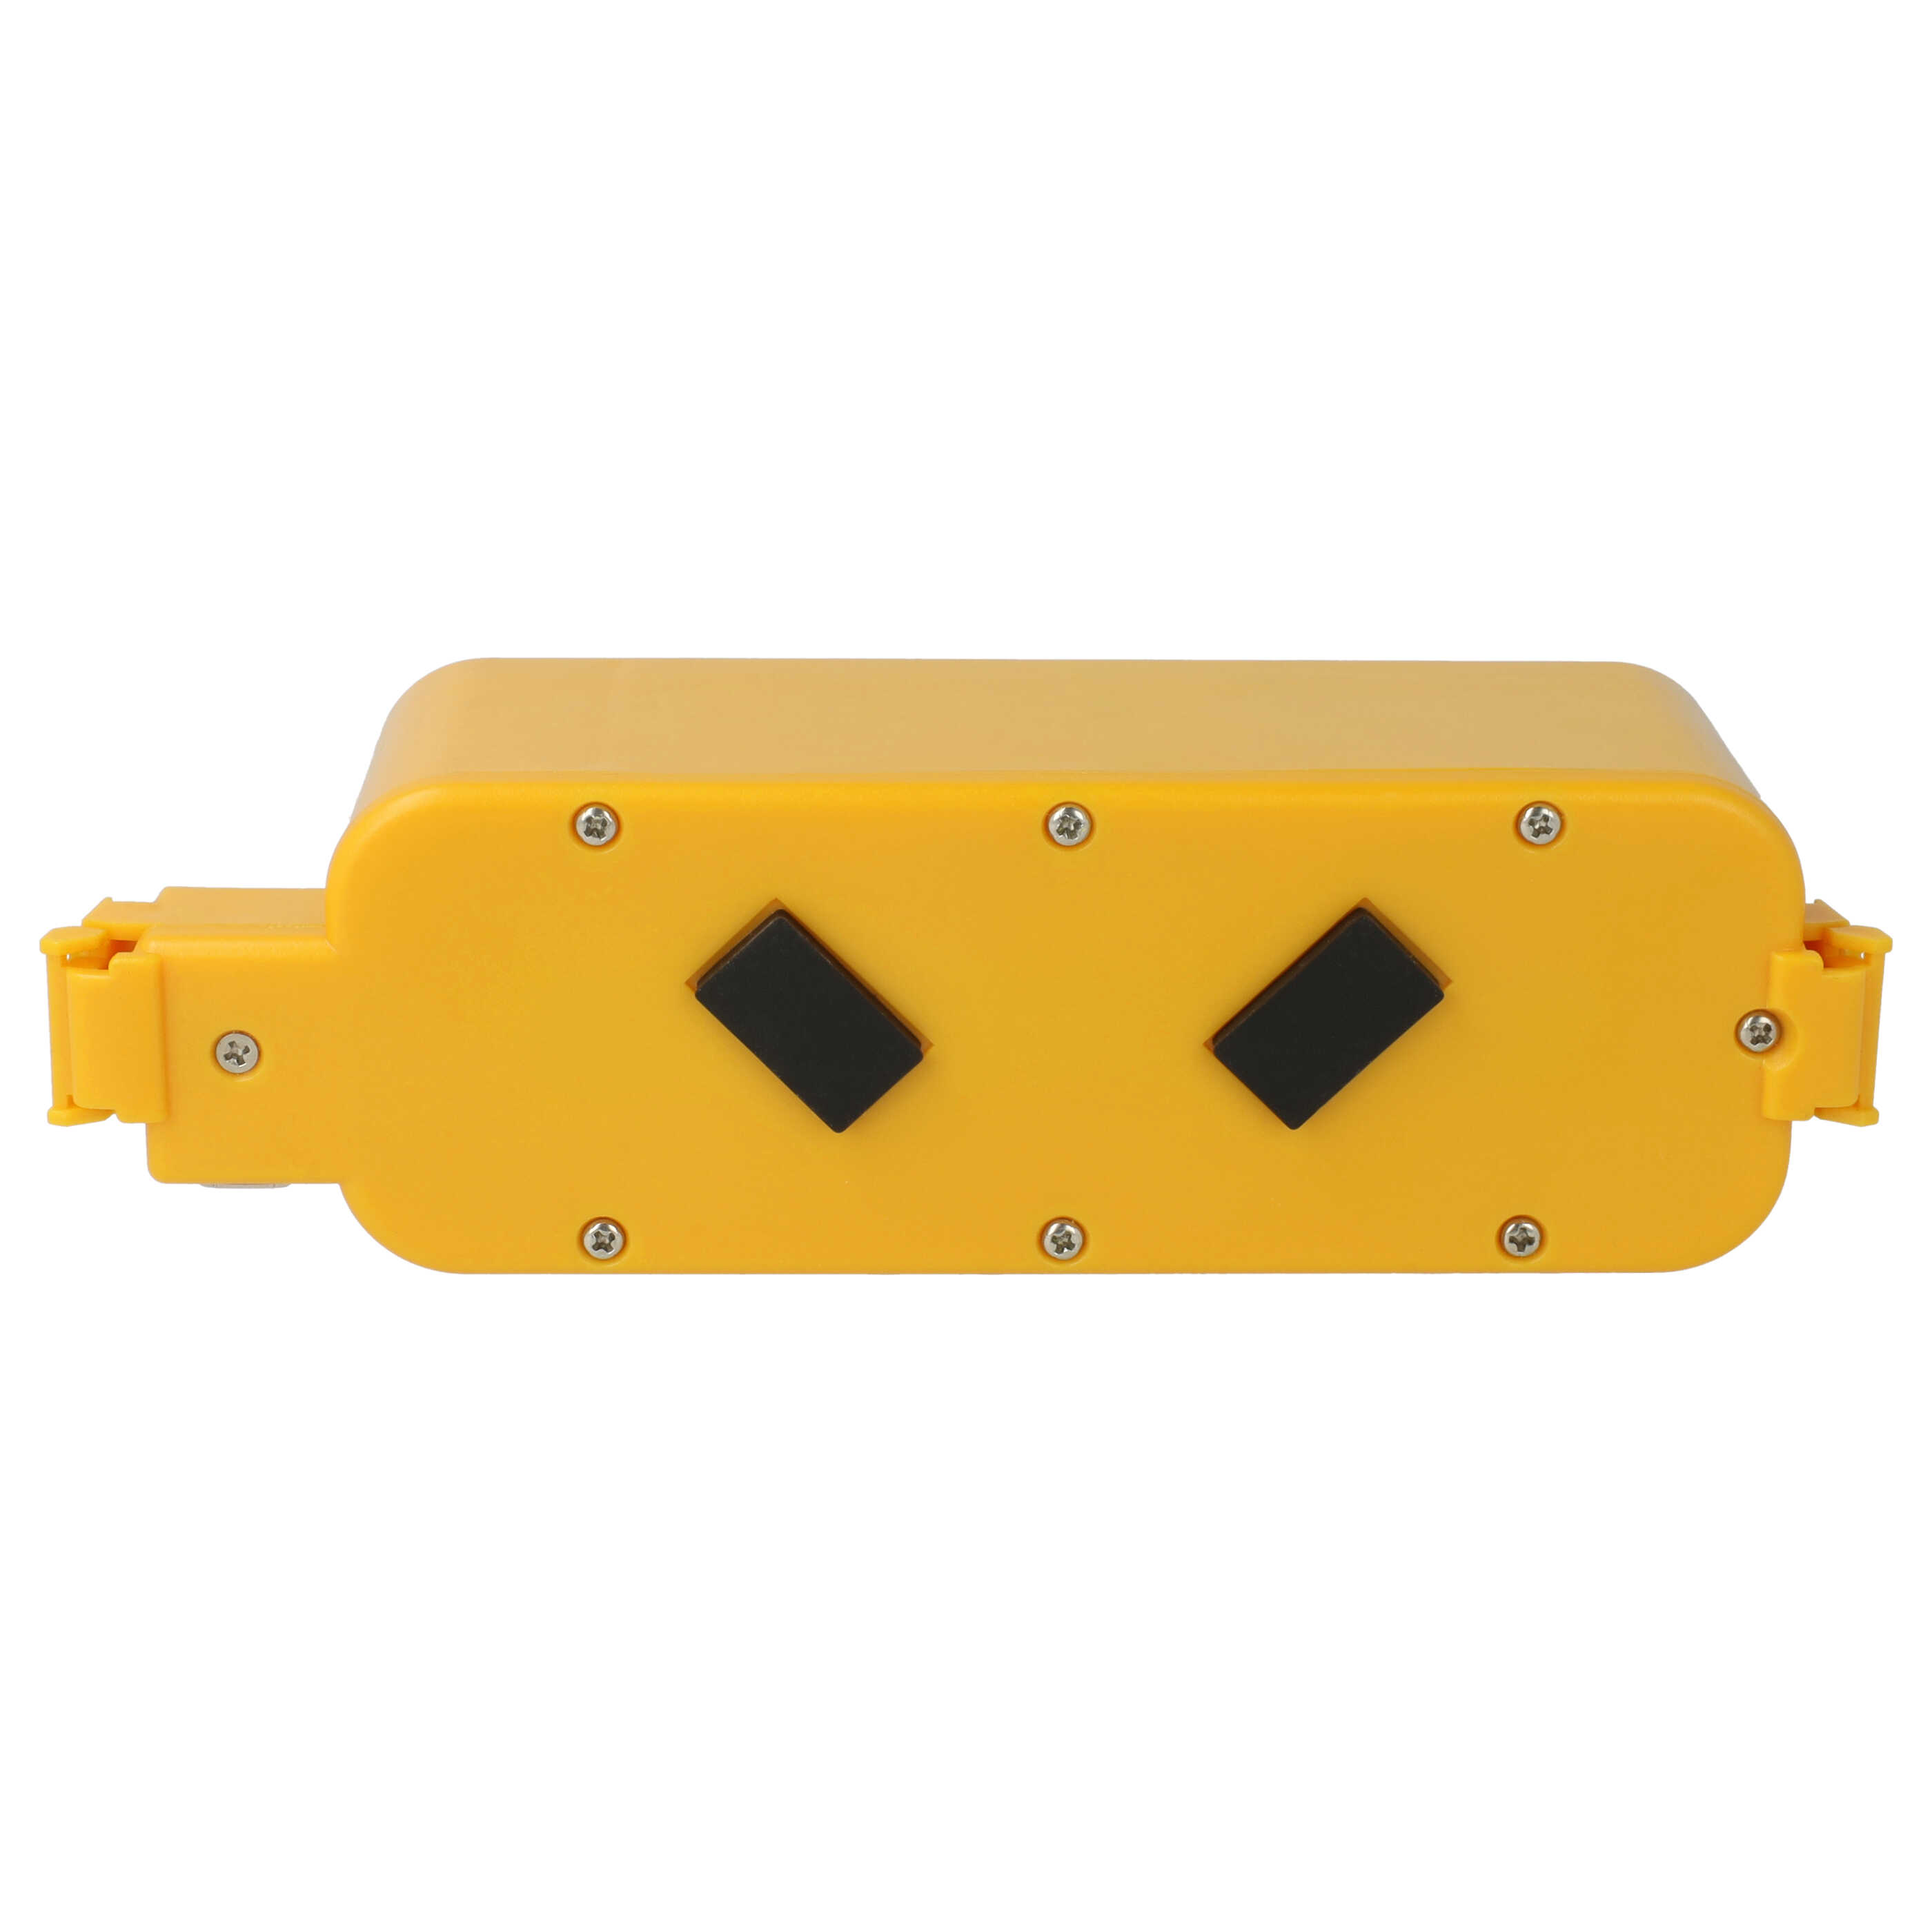 Akumulator do odkurzacza zamiennik APS 4905, NC-3493-919, 11700, 17373 - 3000 mAh 14,4 V NiMH, żółty